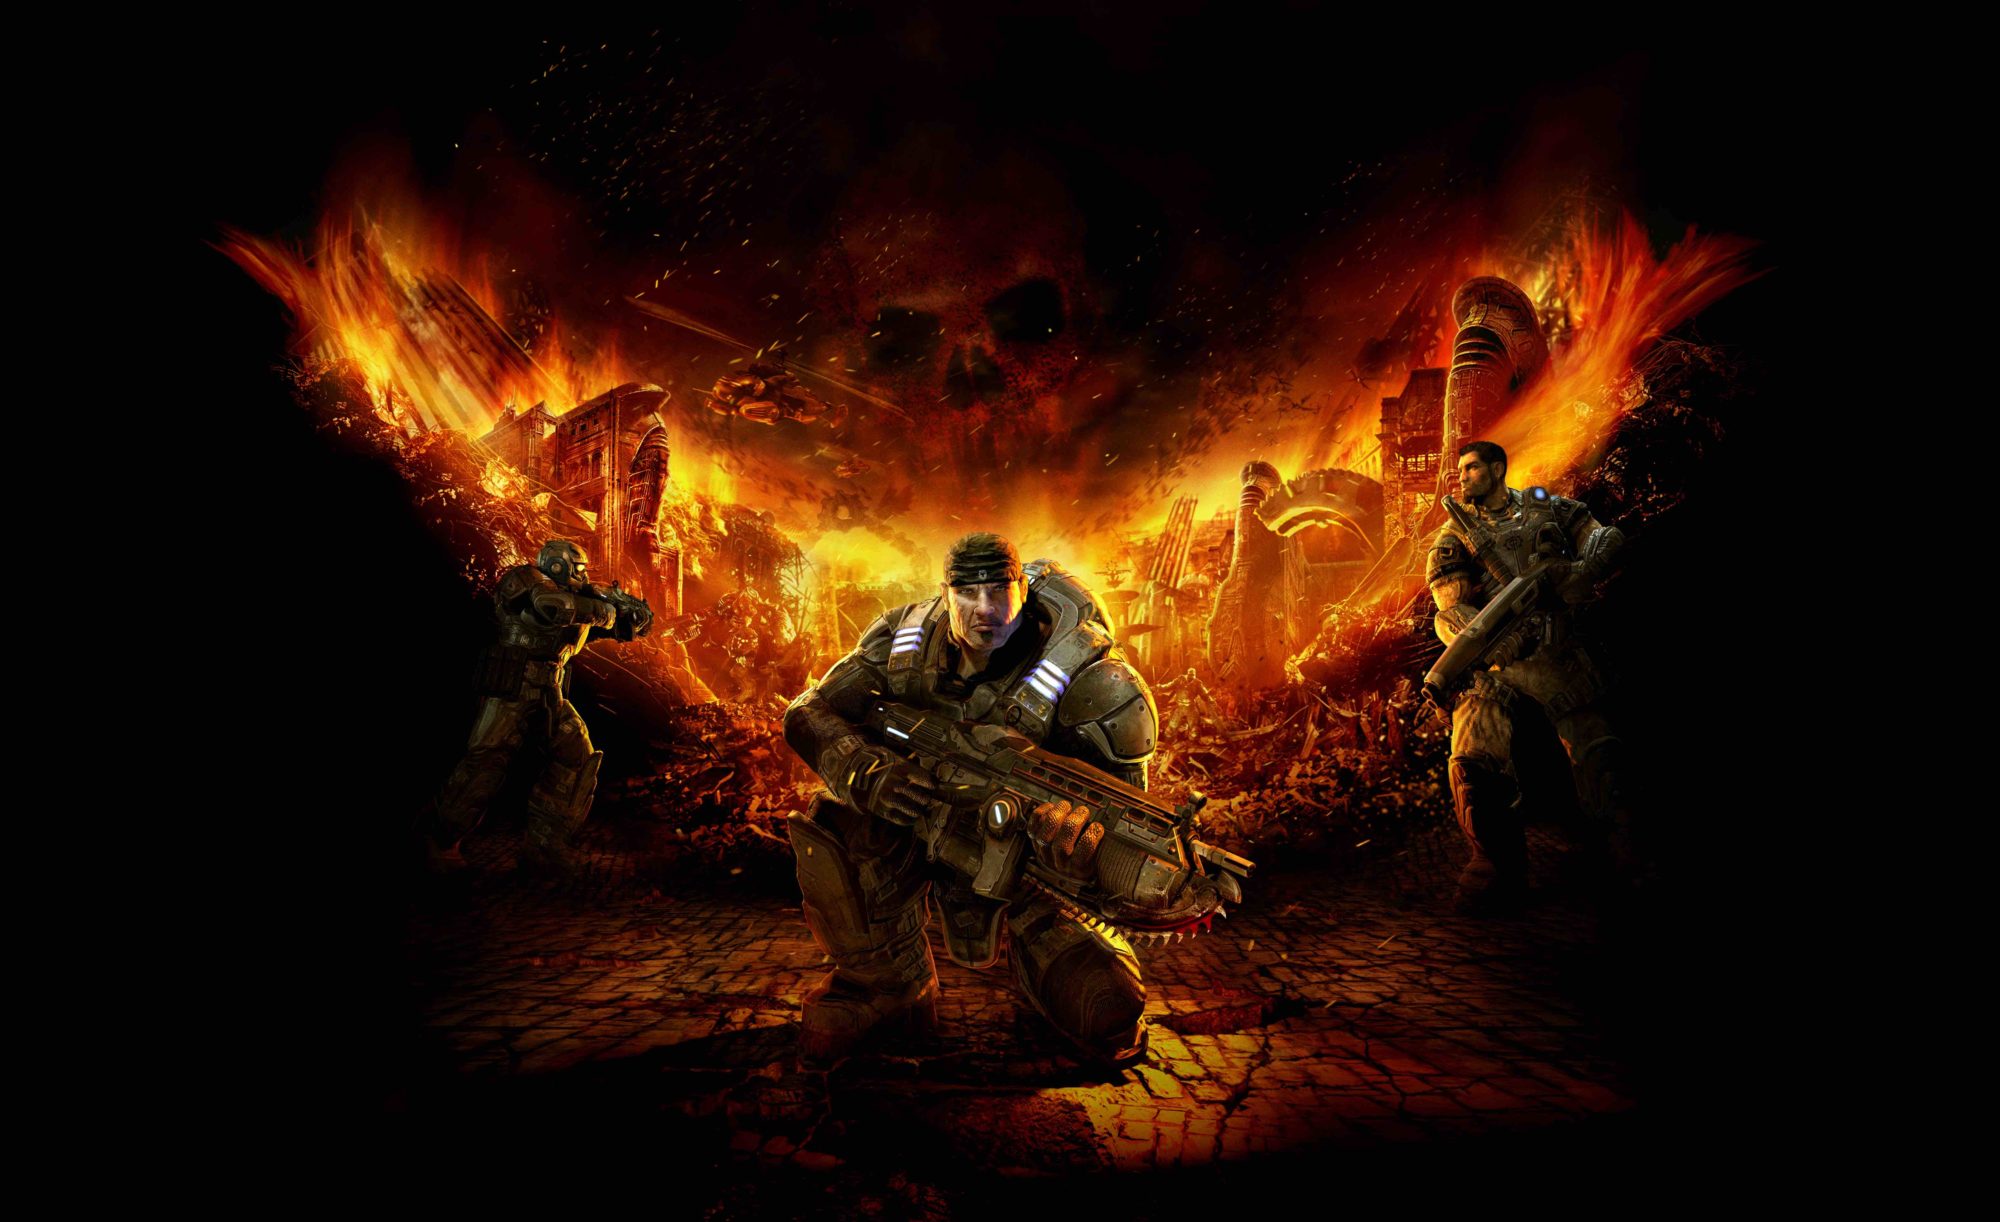 GearsofWar KeyArt - Gears of War : le légendaire jeu video adapté par Jon Spaihts dans un film en live action prochainement sur Netflix